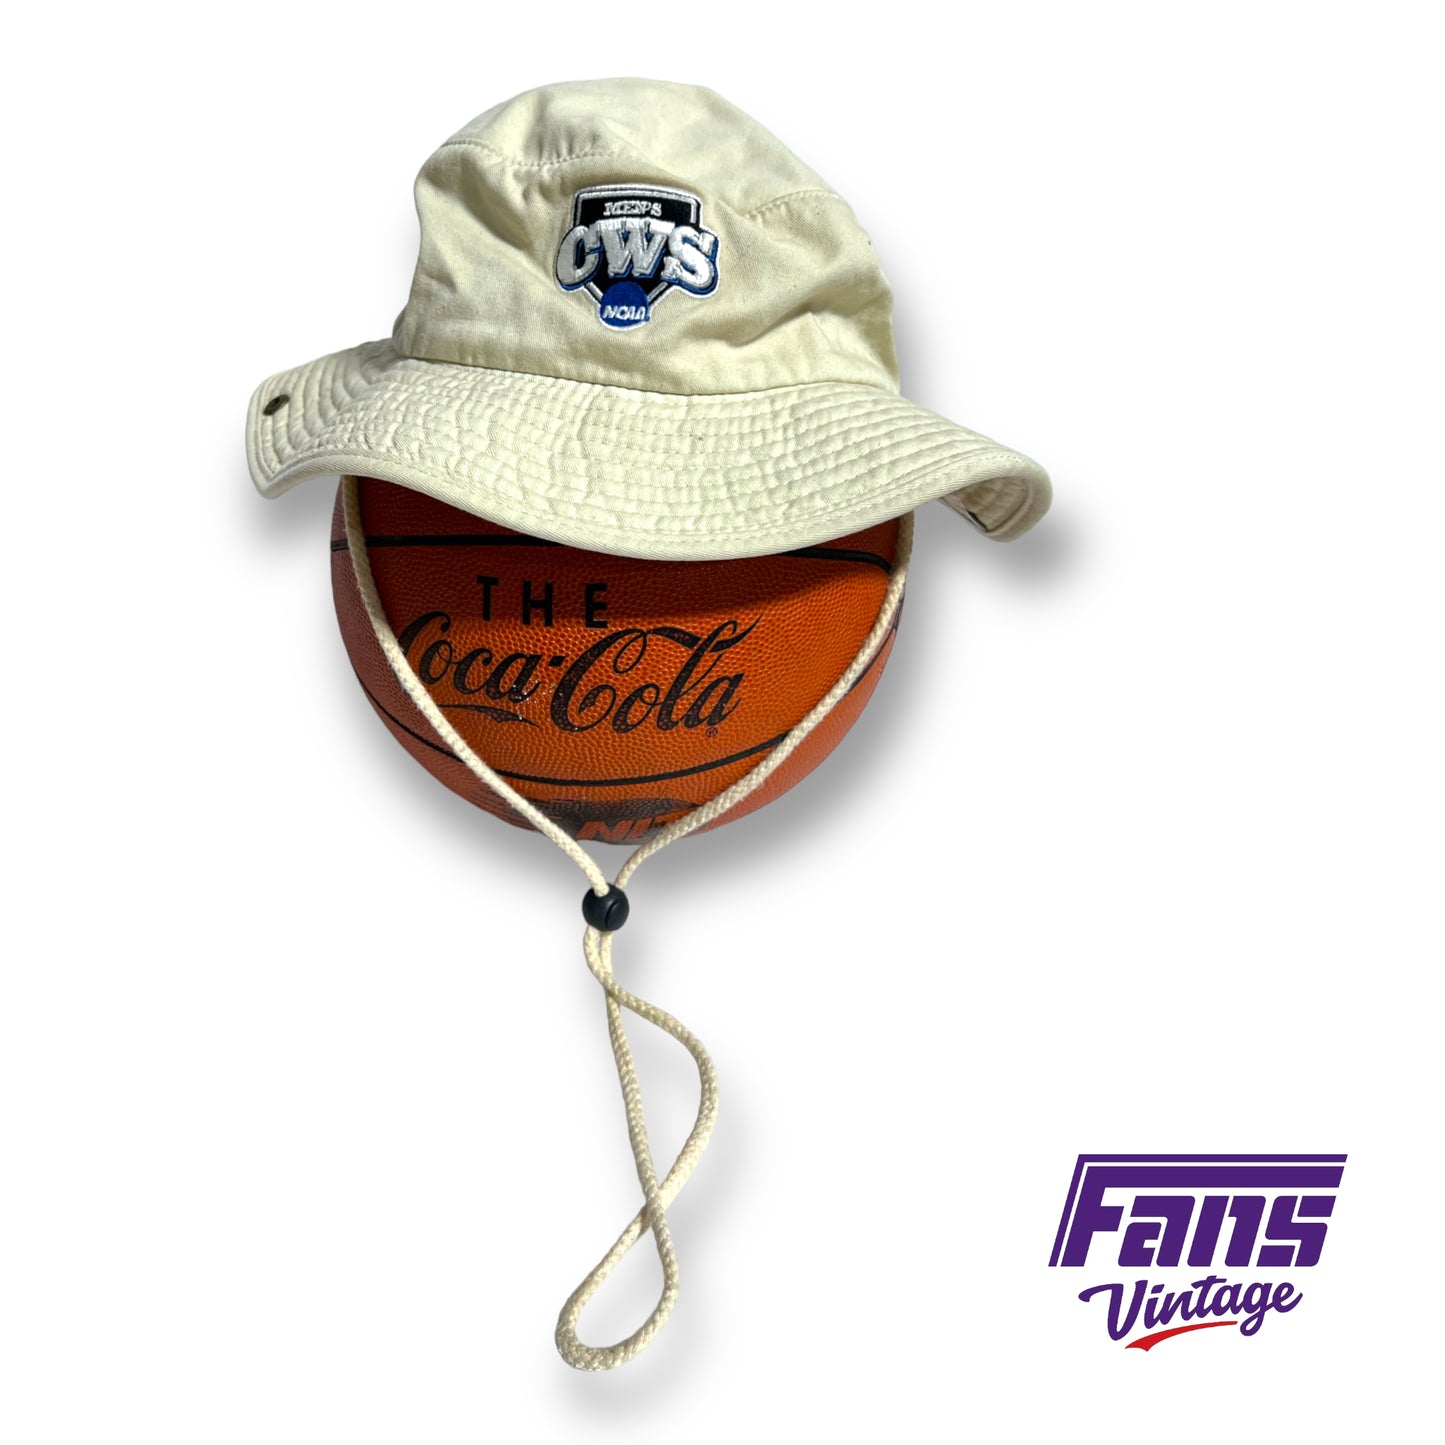 Adidas College World Series bucket hat